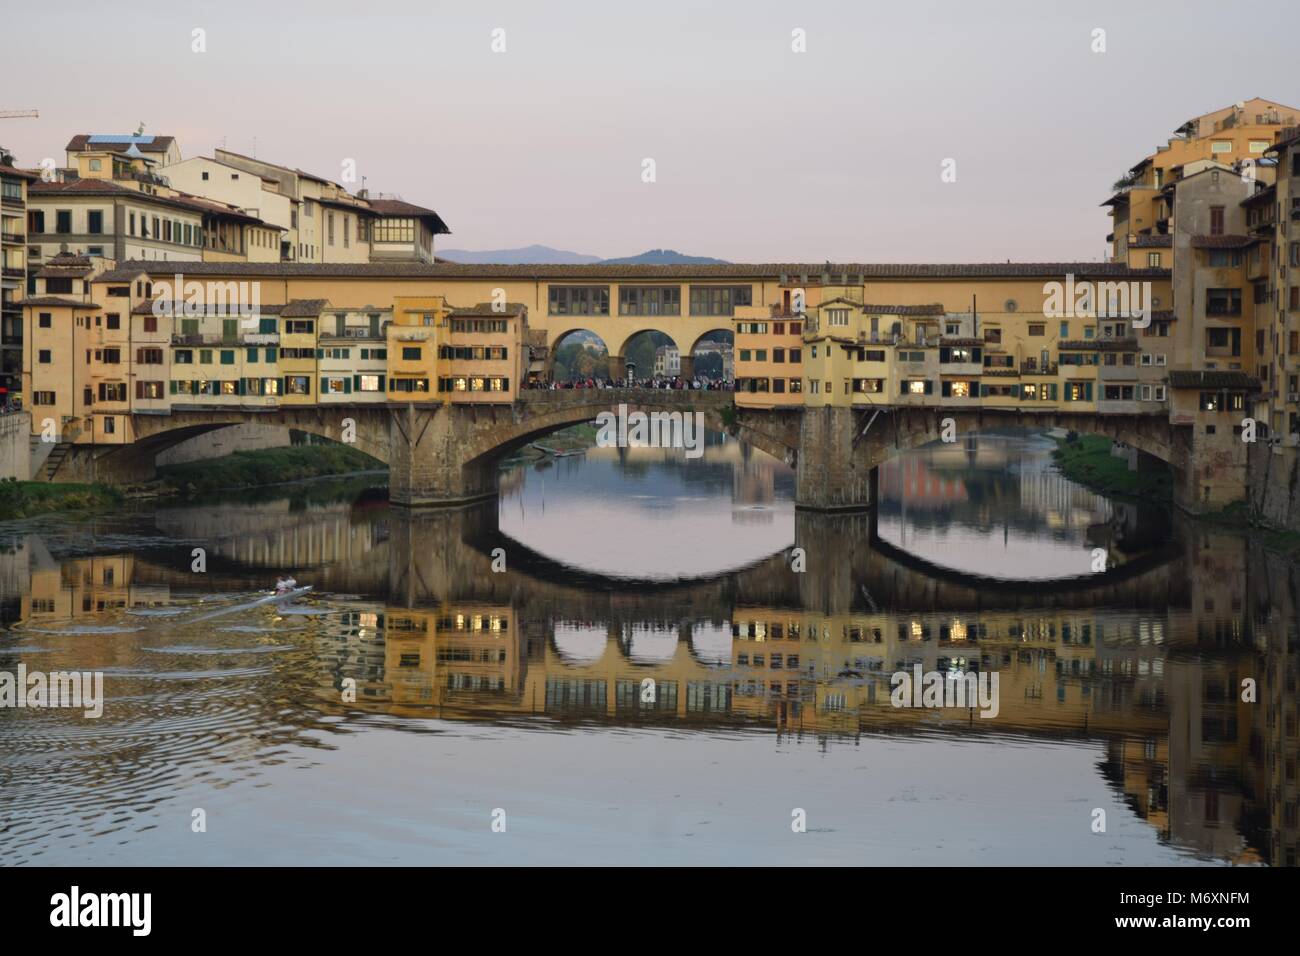 Brücke über den Arno: Ein Blick auf die Ponte Vecchio in Florenz, Toskana, während unten die Reflexion in der Arno ist durch zwei Ruderer durchbohrt. Stockfoto